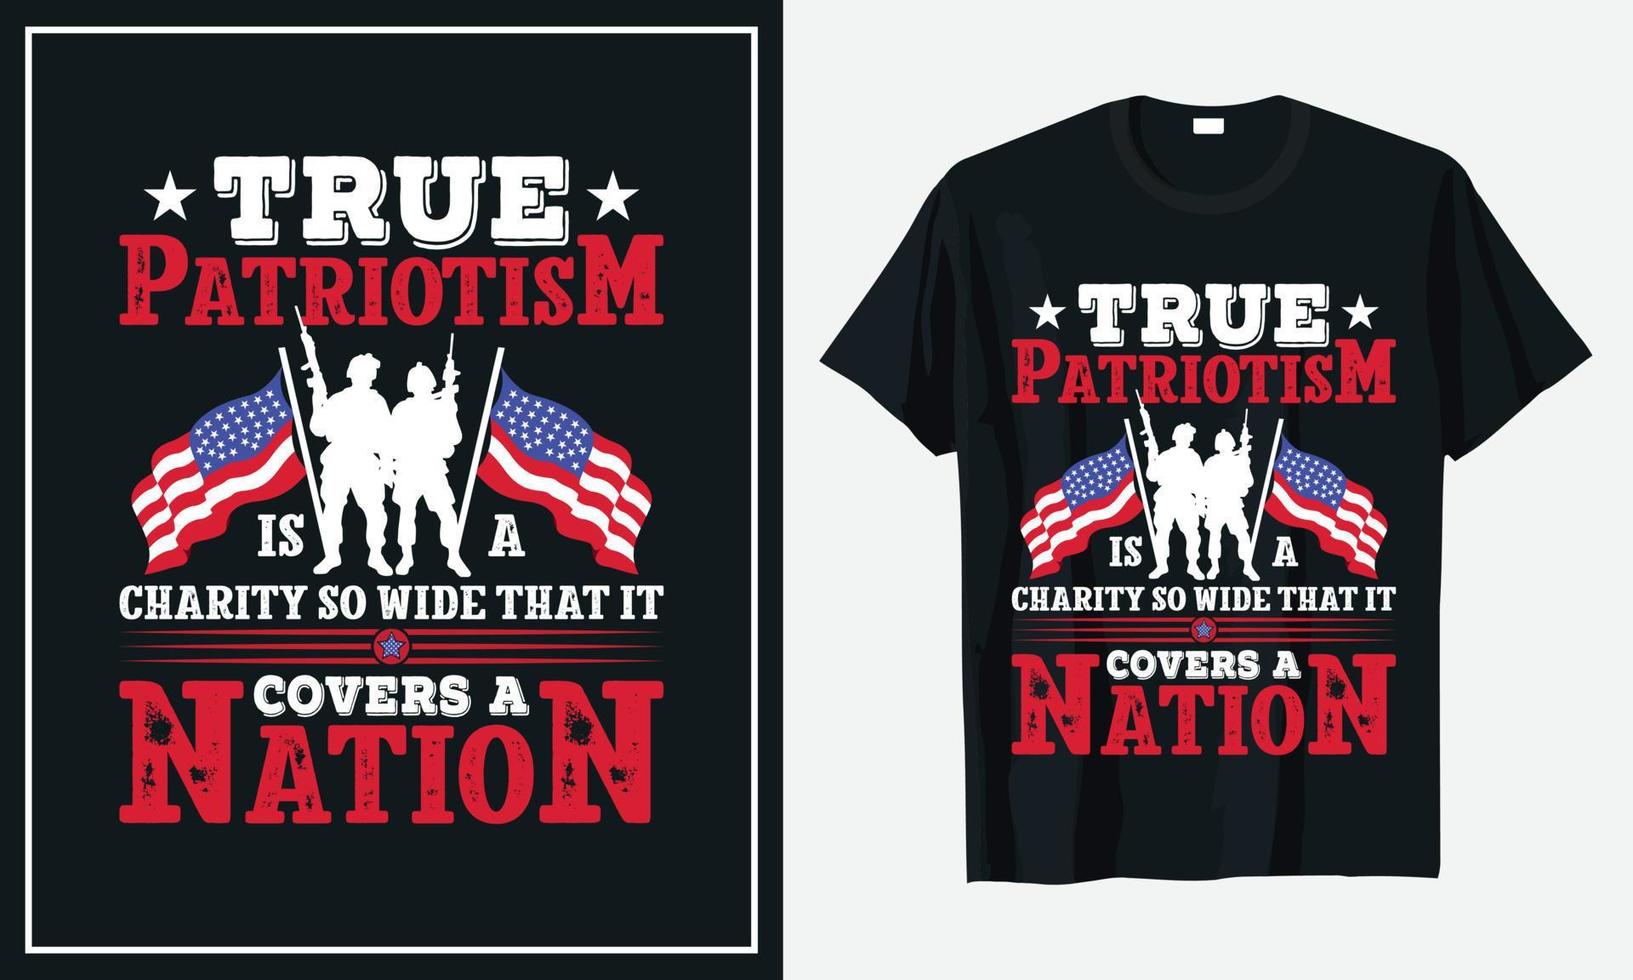 estampado de diseño de camiseta del día del patriota vector